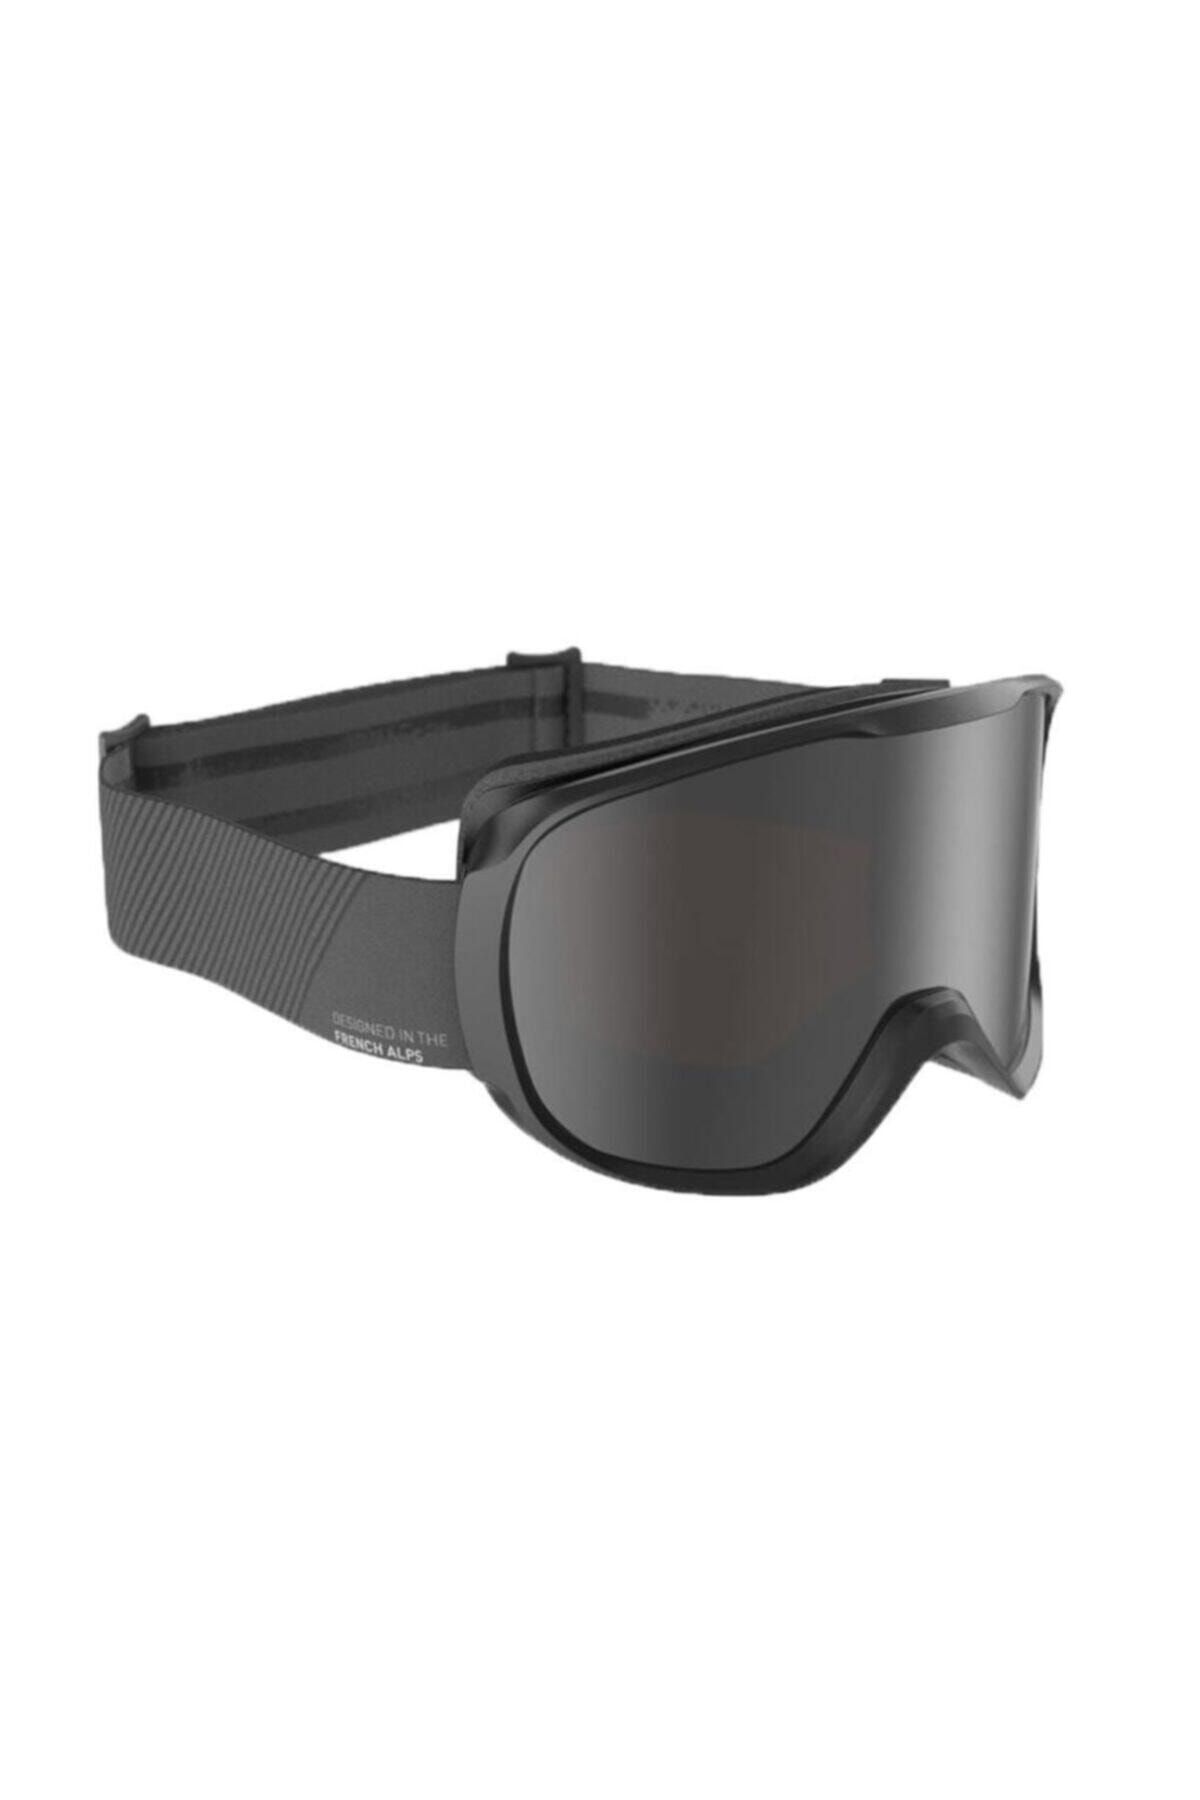 Decathlon - Kayak Snowboard Gözlüğü Kayak Maskesi Siyah G 500